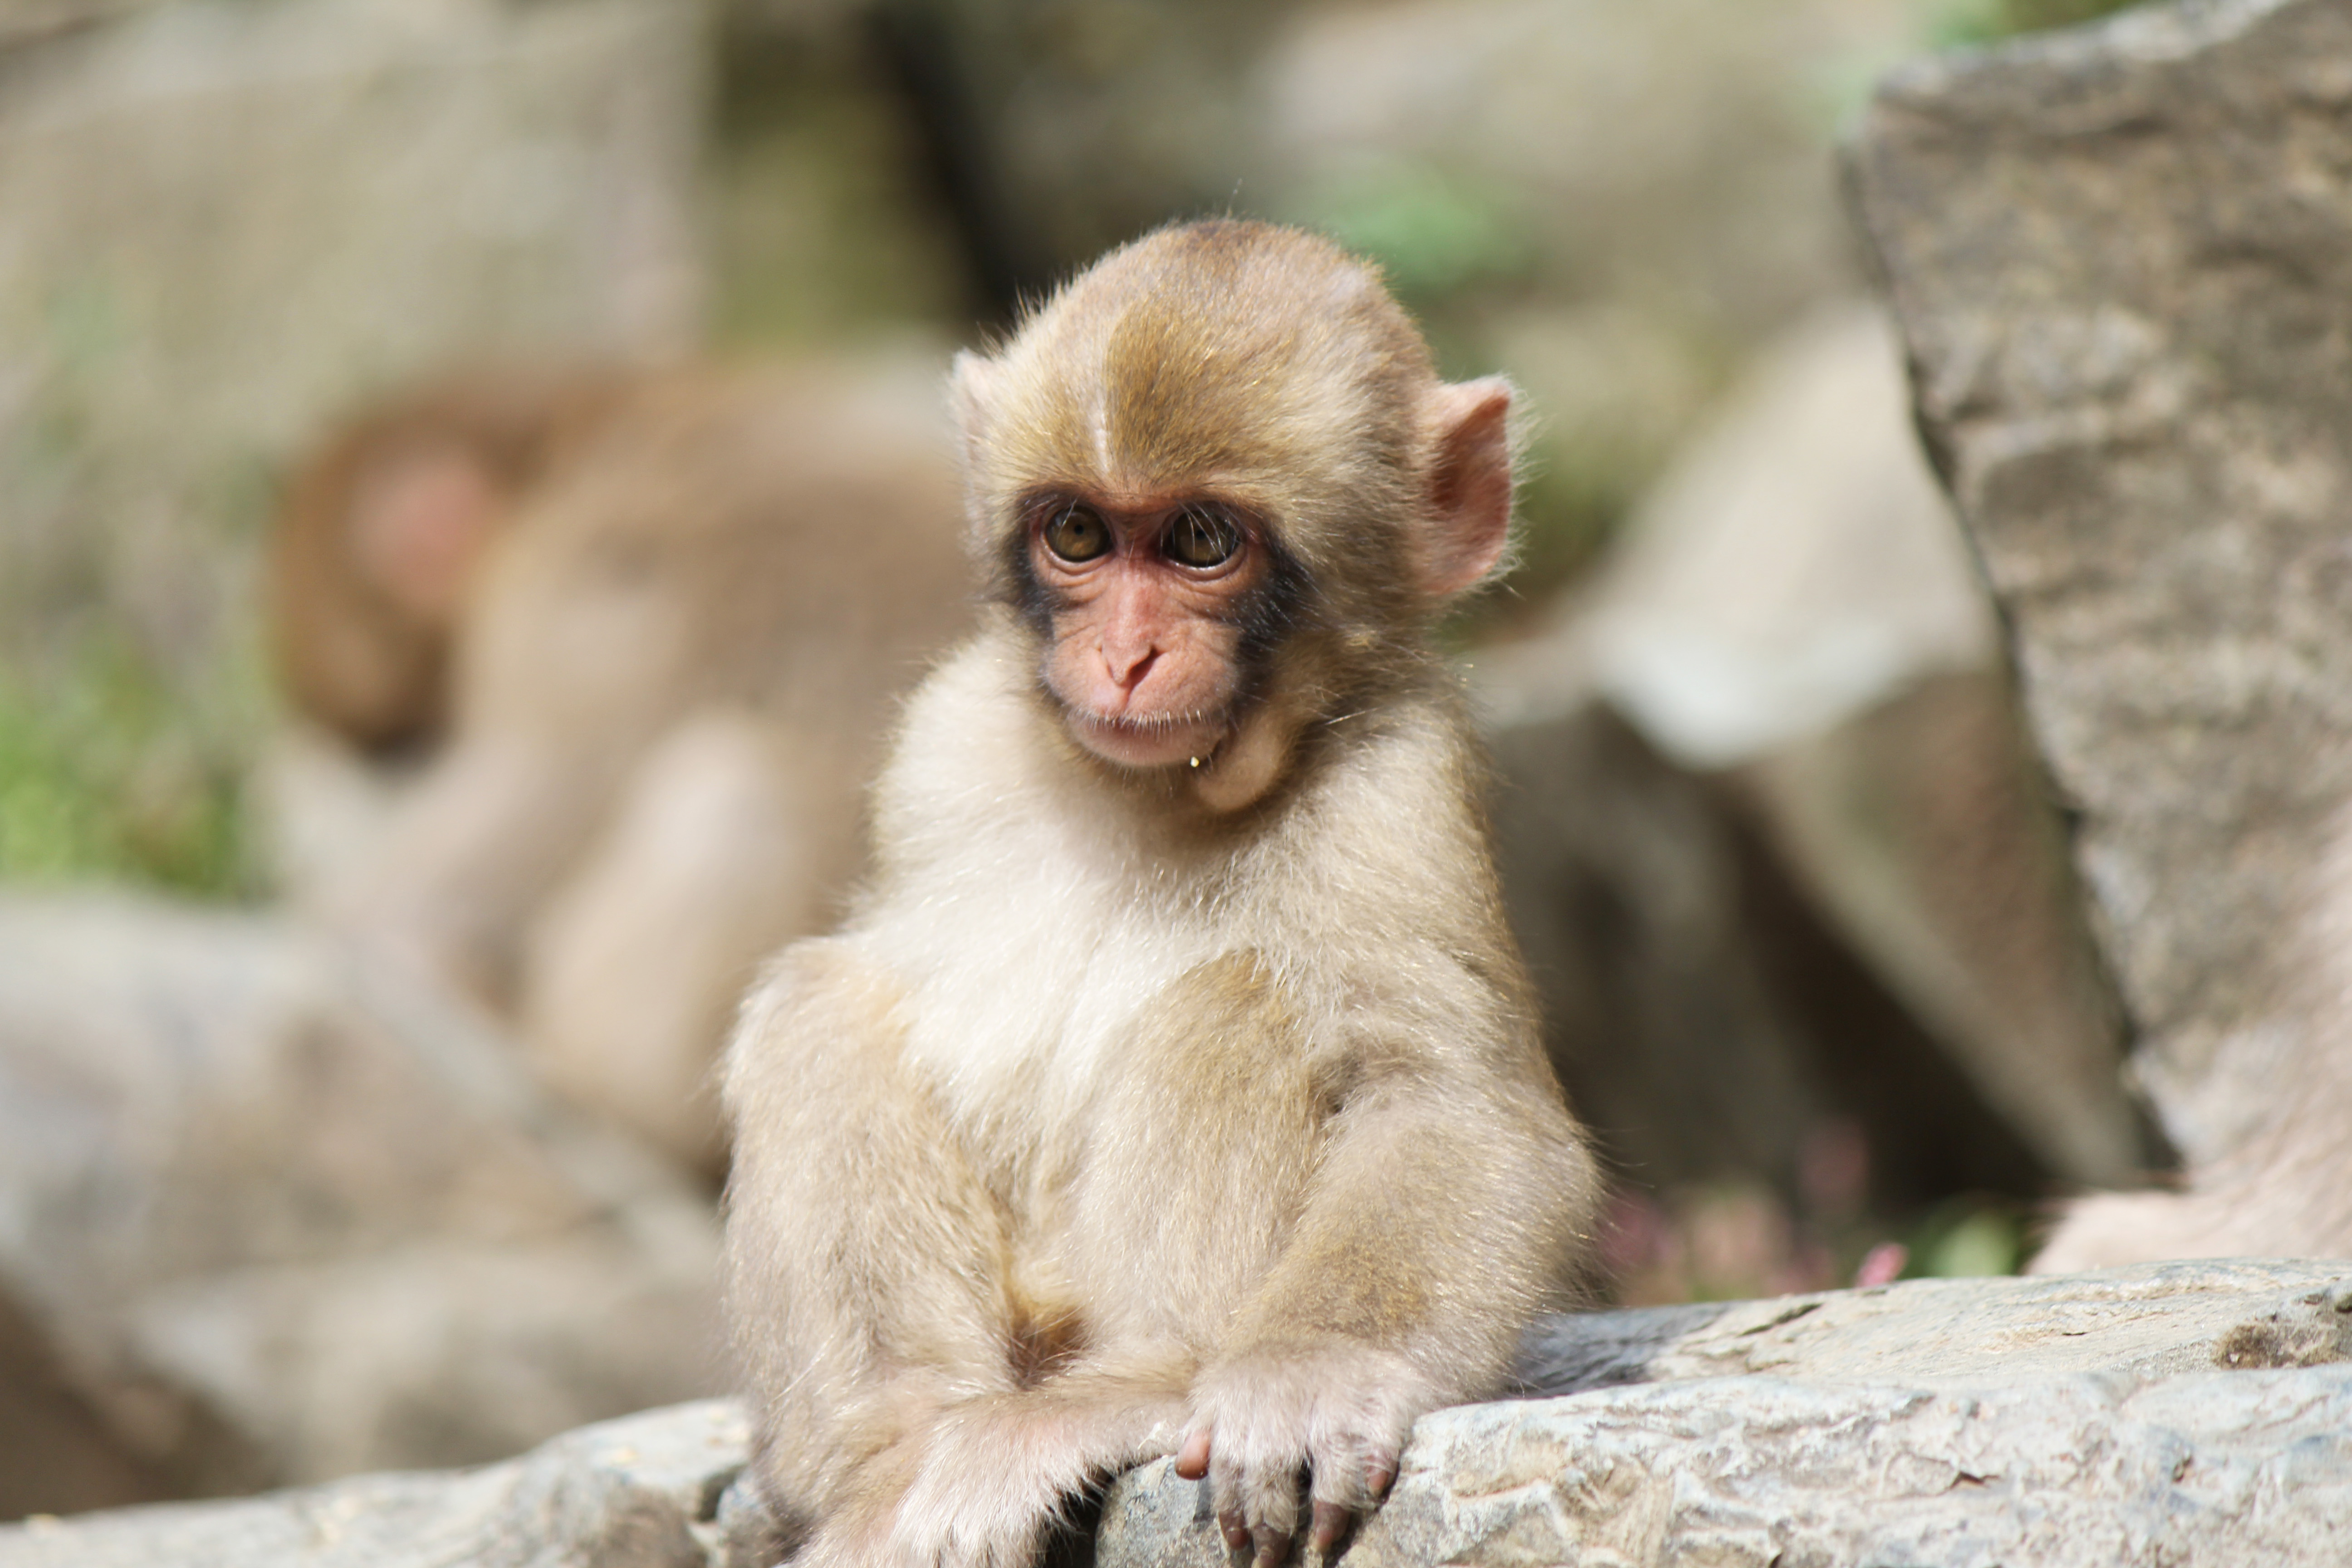 くらりすさん 日本の真ん中へん くらりすさんの作品 長野県下高井郡山ノ内の地獄谷温泉にある野猿公苑の野生の子猿です 何を見つめているのでしょうか 可愛いです